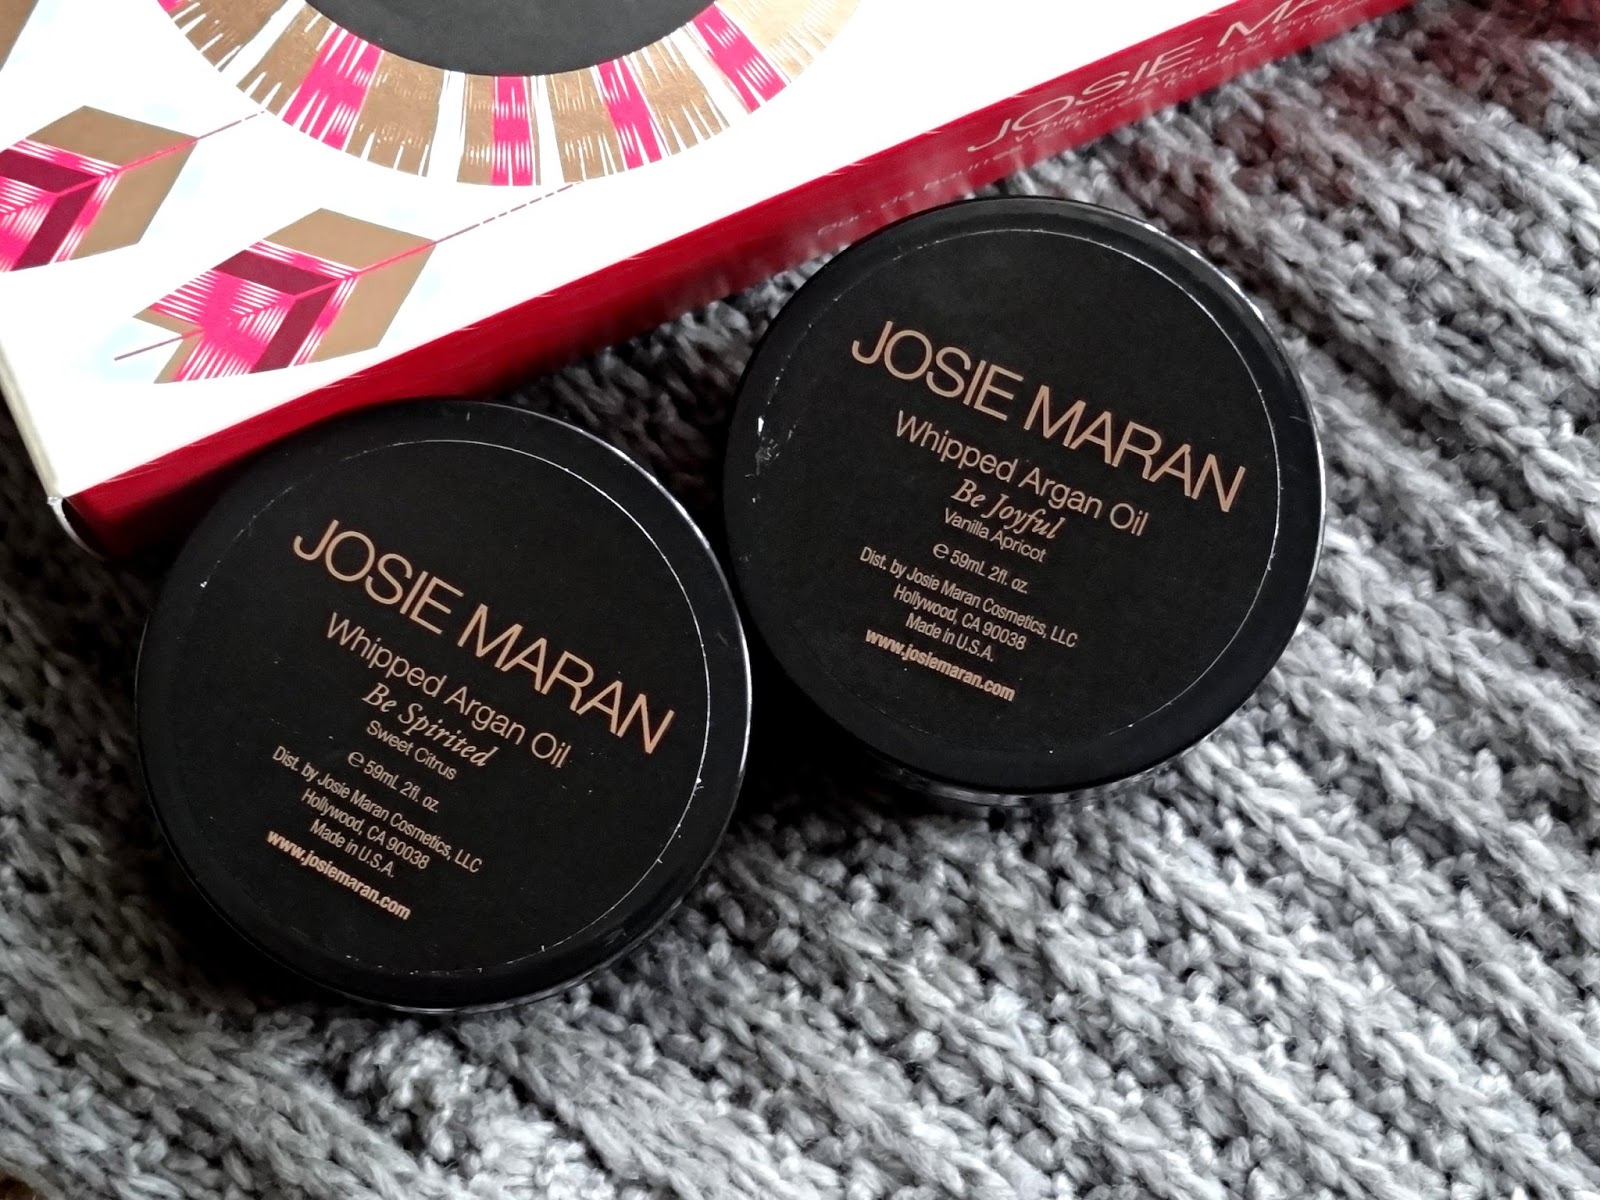 Josie Maran Winter Dreams Whipped Argan Oil Body Butter Duo